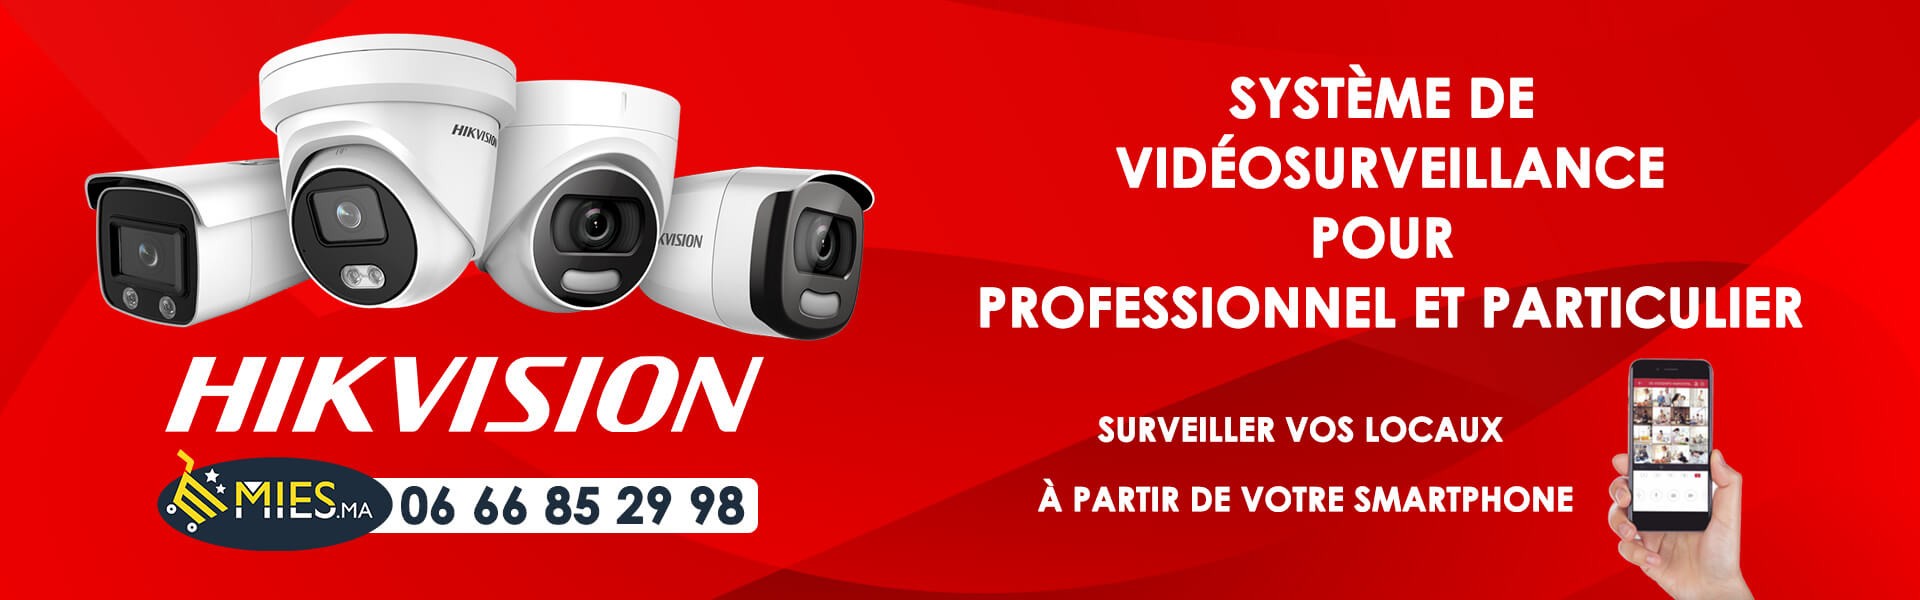 Vidéosurveillance Maroc Camera de surveillance